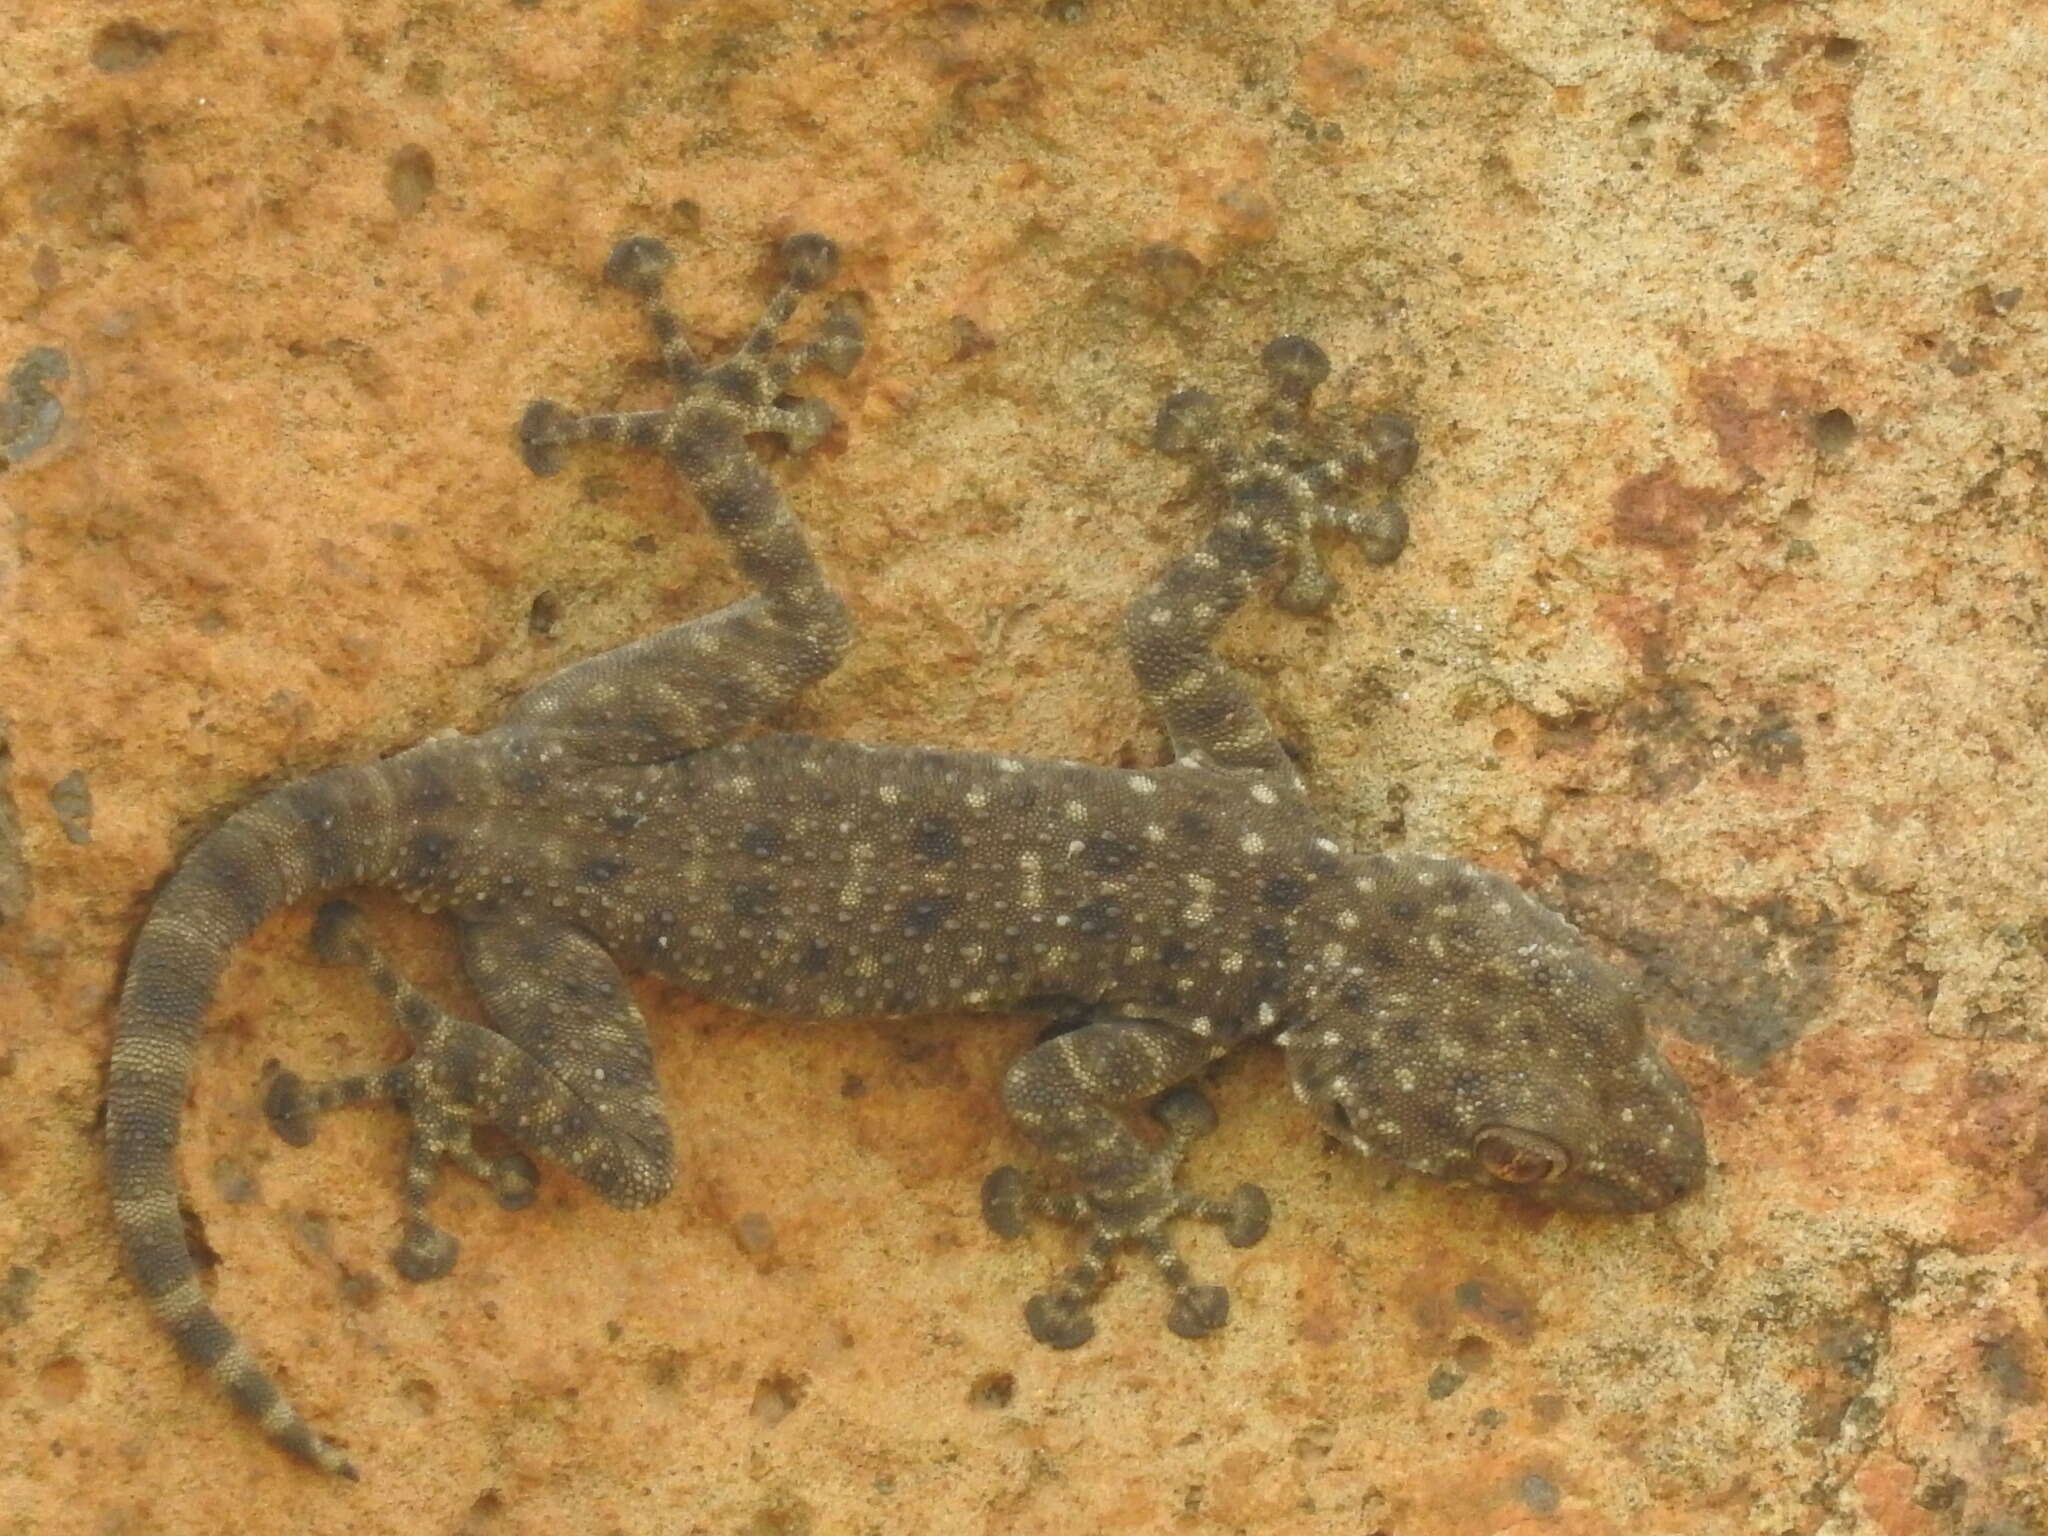 Image of Israeli Fan-fingered Gecko